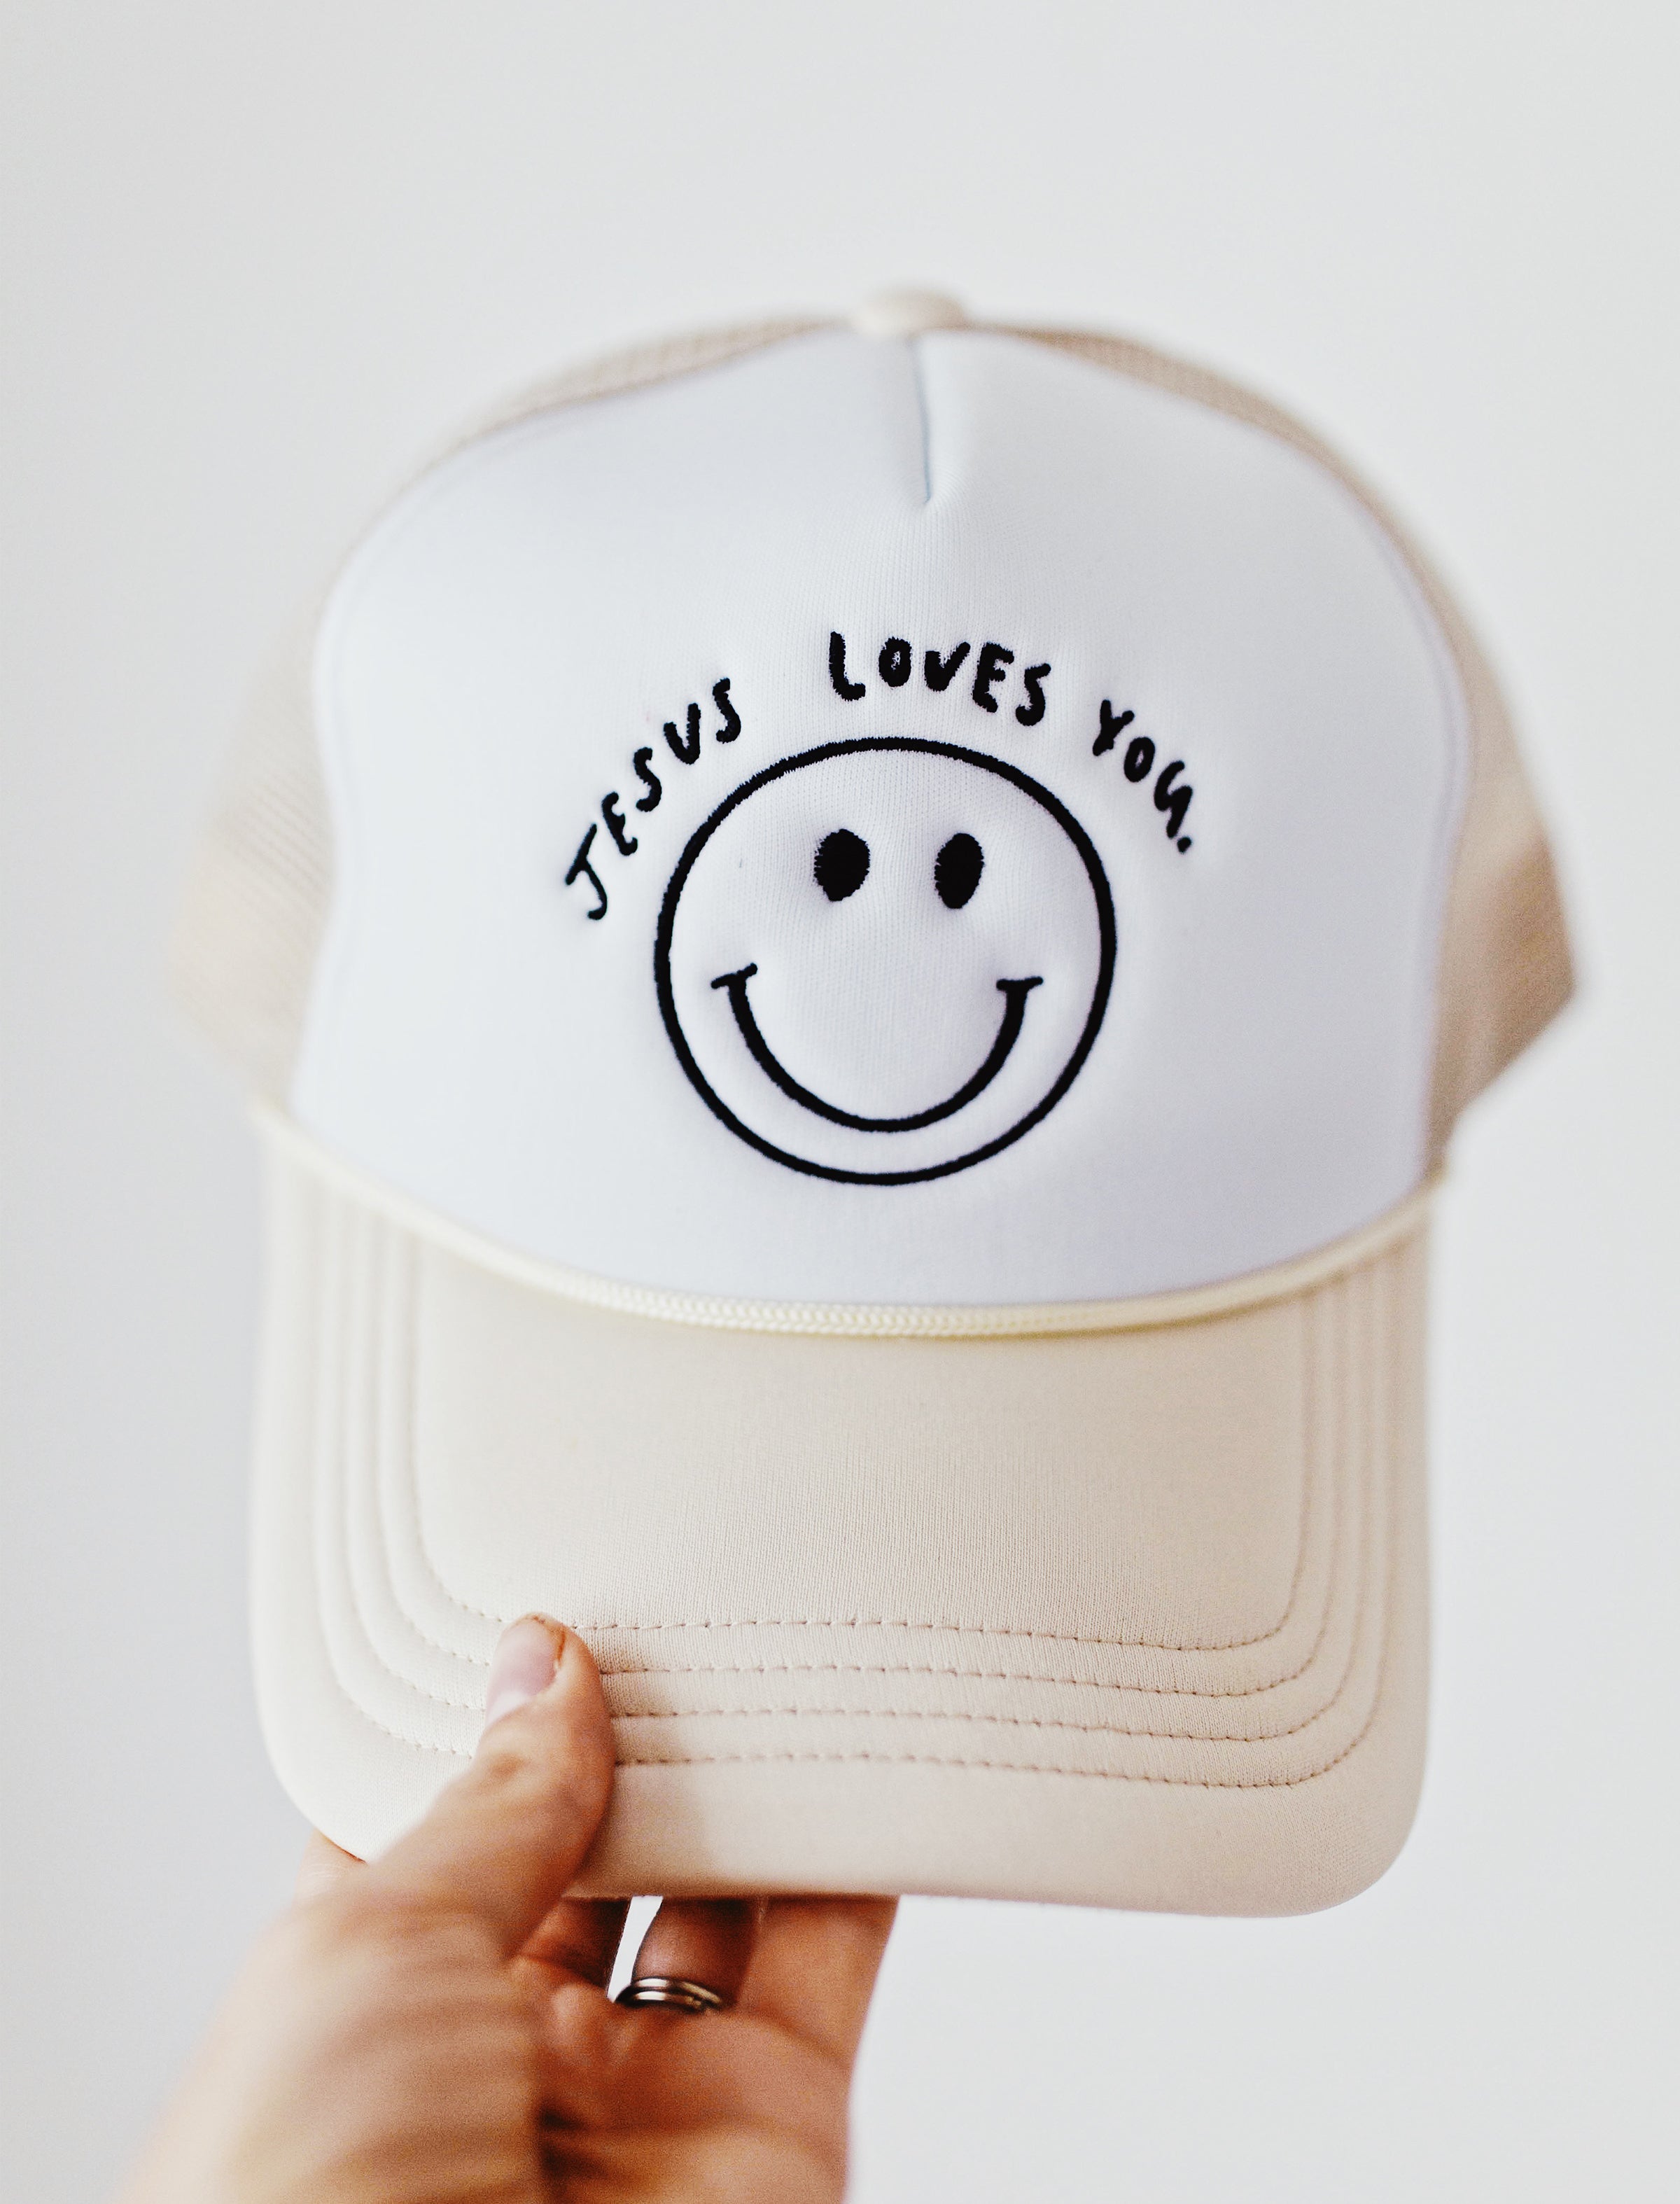 Hat: Jesus loves you